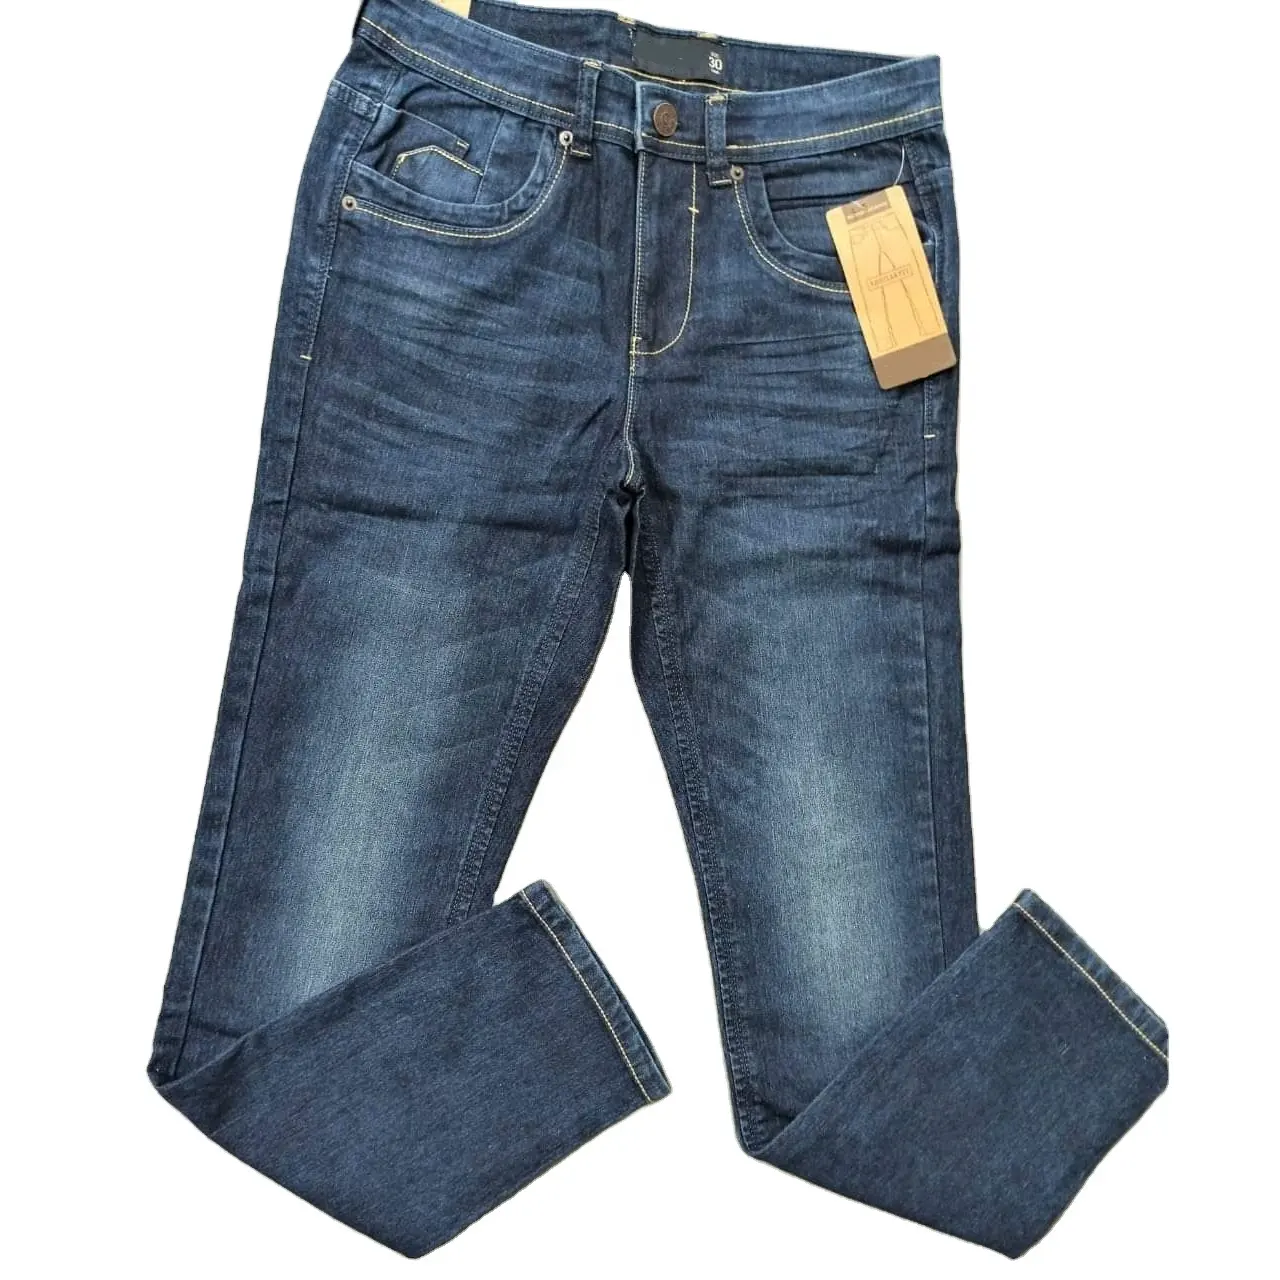 Оптовая продажа, повседневные синие джинсовые мужские джинсы большого размера, фирменные джинсы для взрослых, Лучшая цена, в наличии, брюки из бангладеш